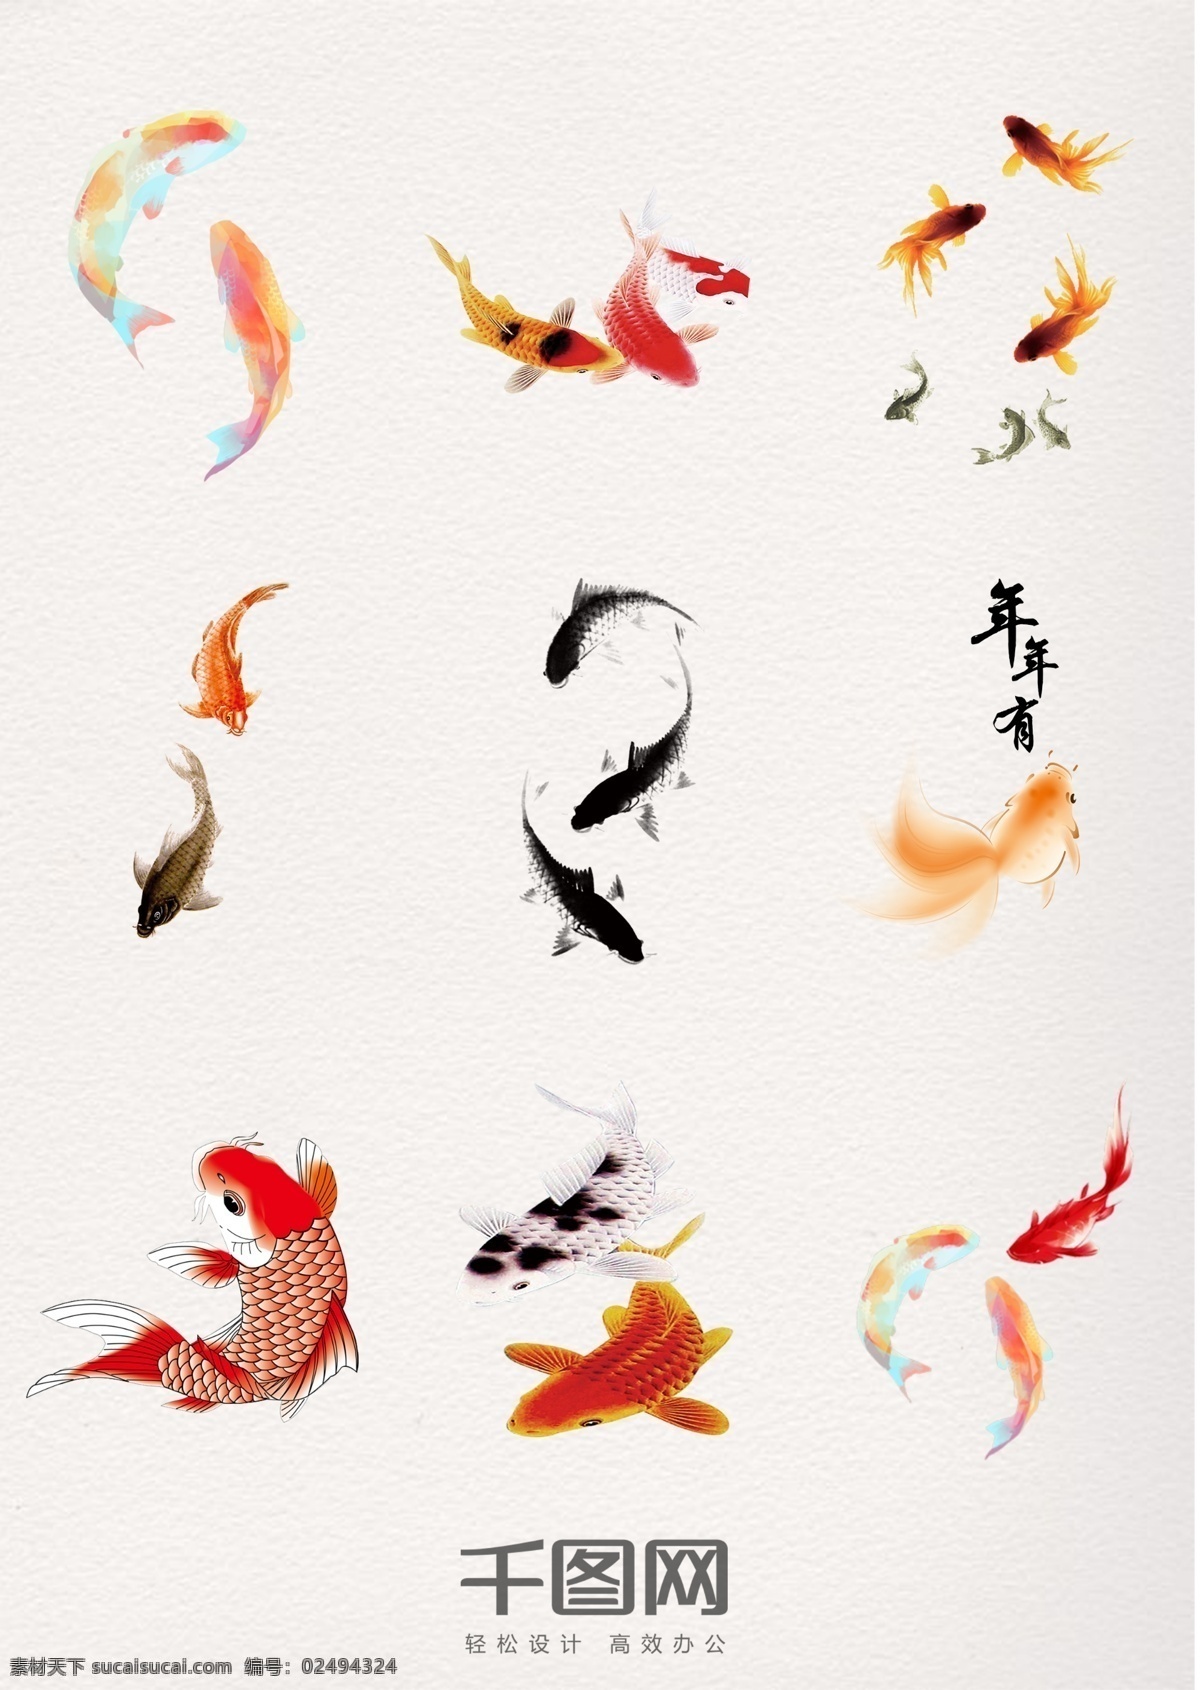 中国 风 精美 水墨 年年 鱼 中国风 水墨风格 年年有鱼 矢量素材